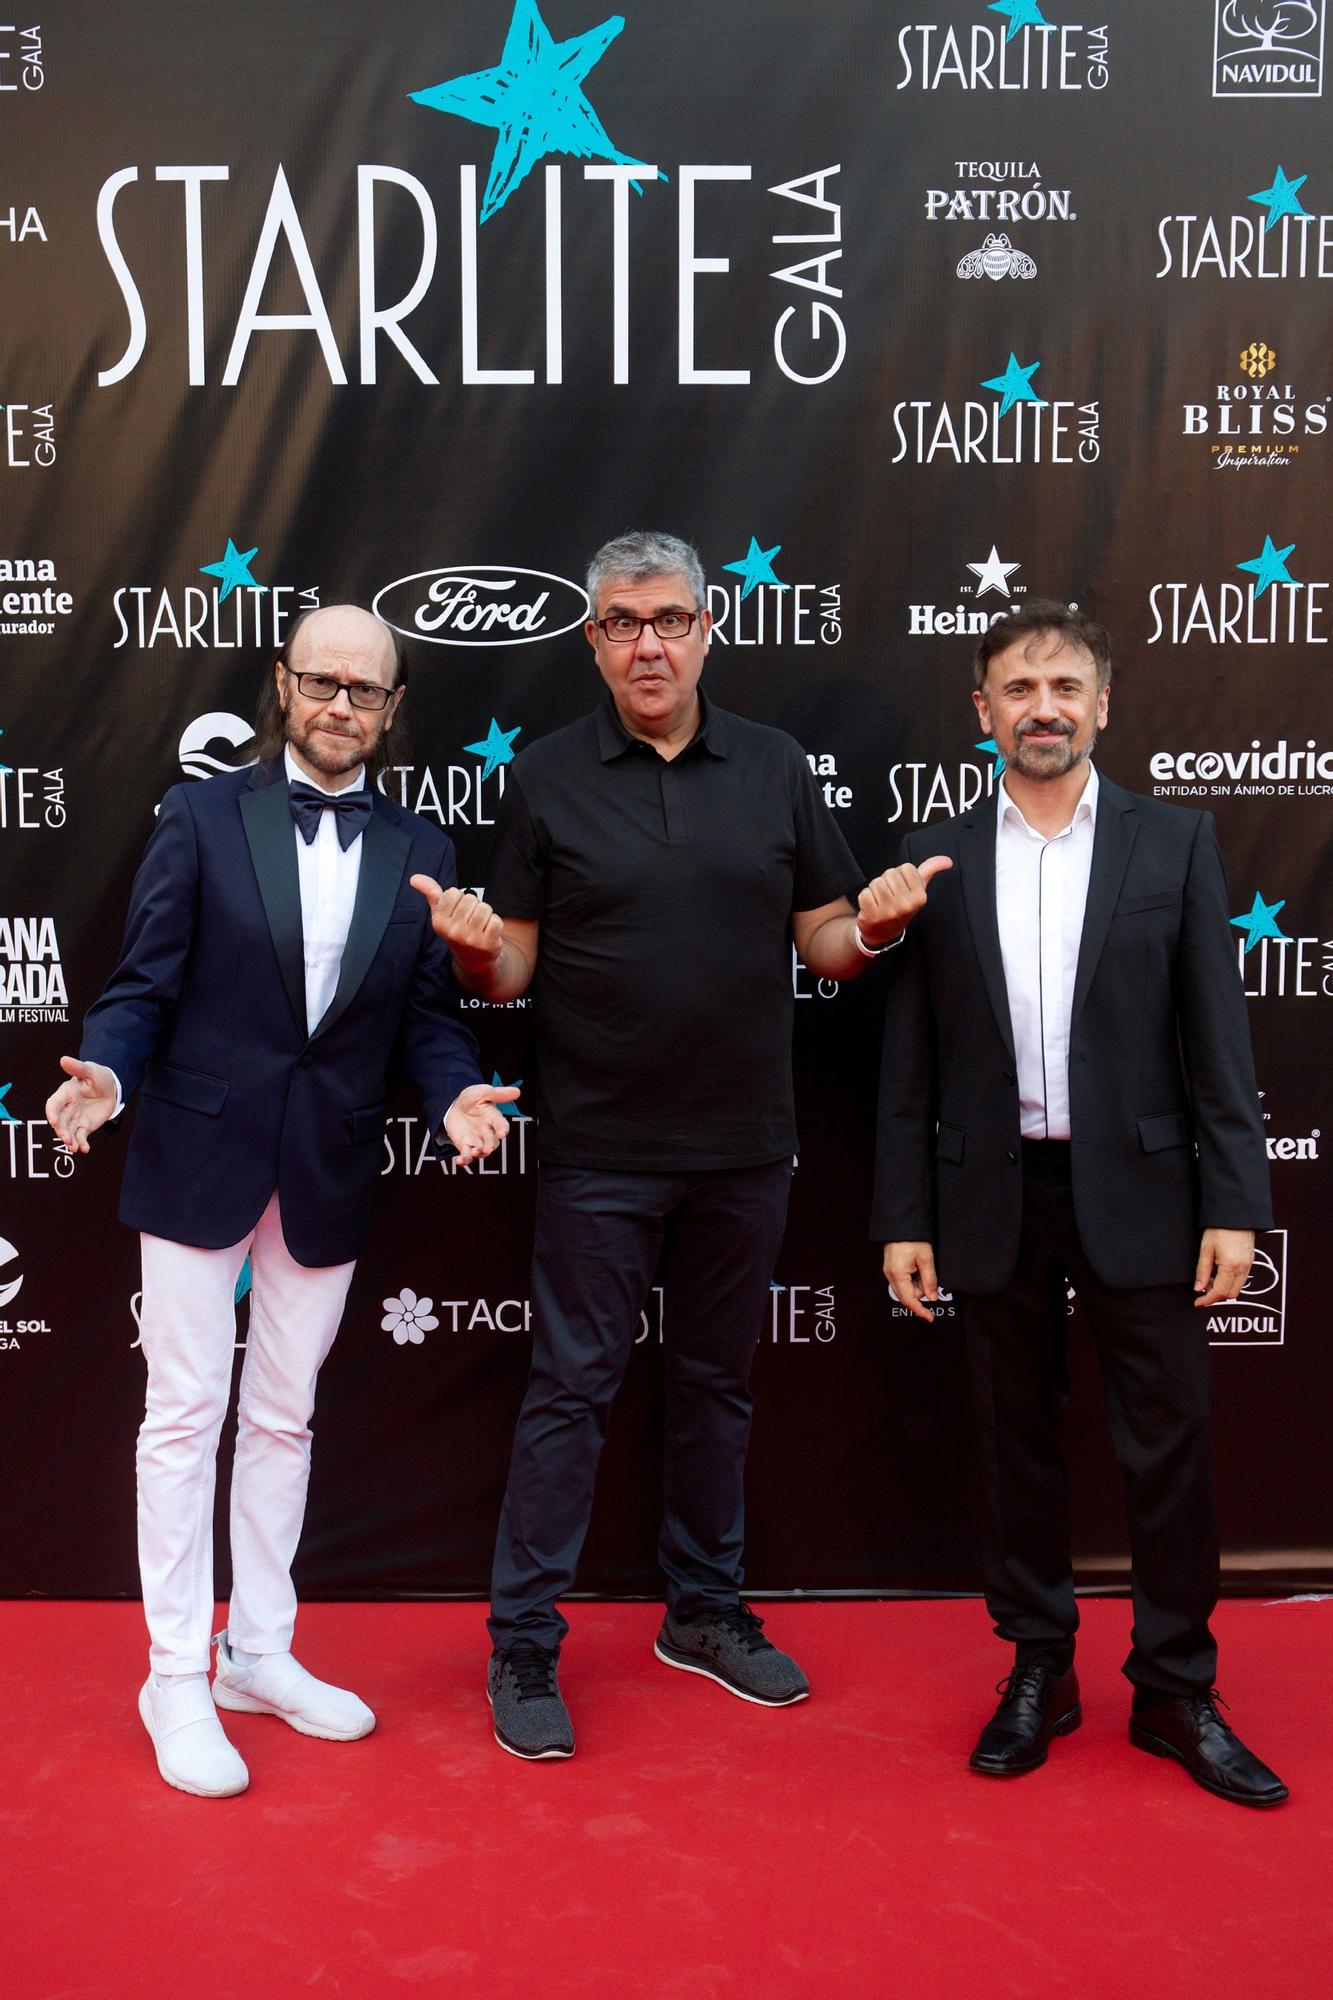 Celebridades apoyan la gala de Starlite en Marbella